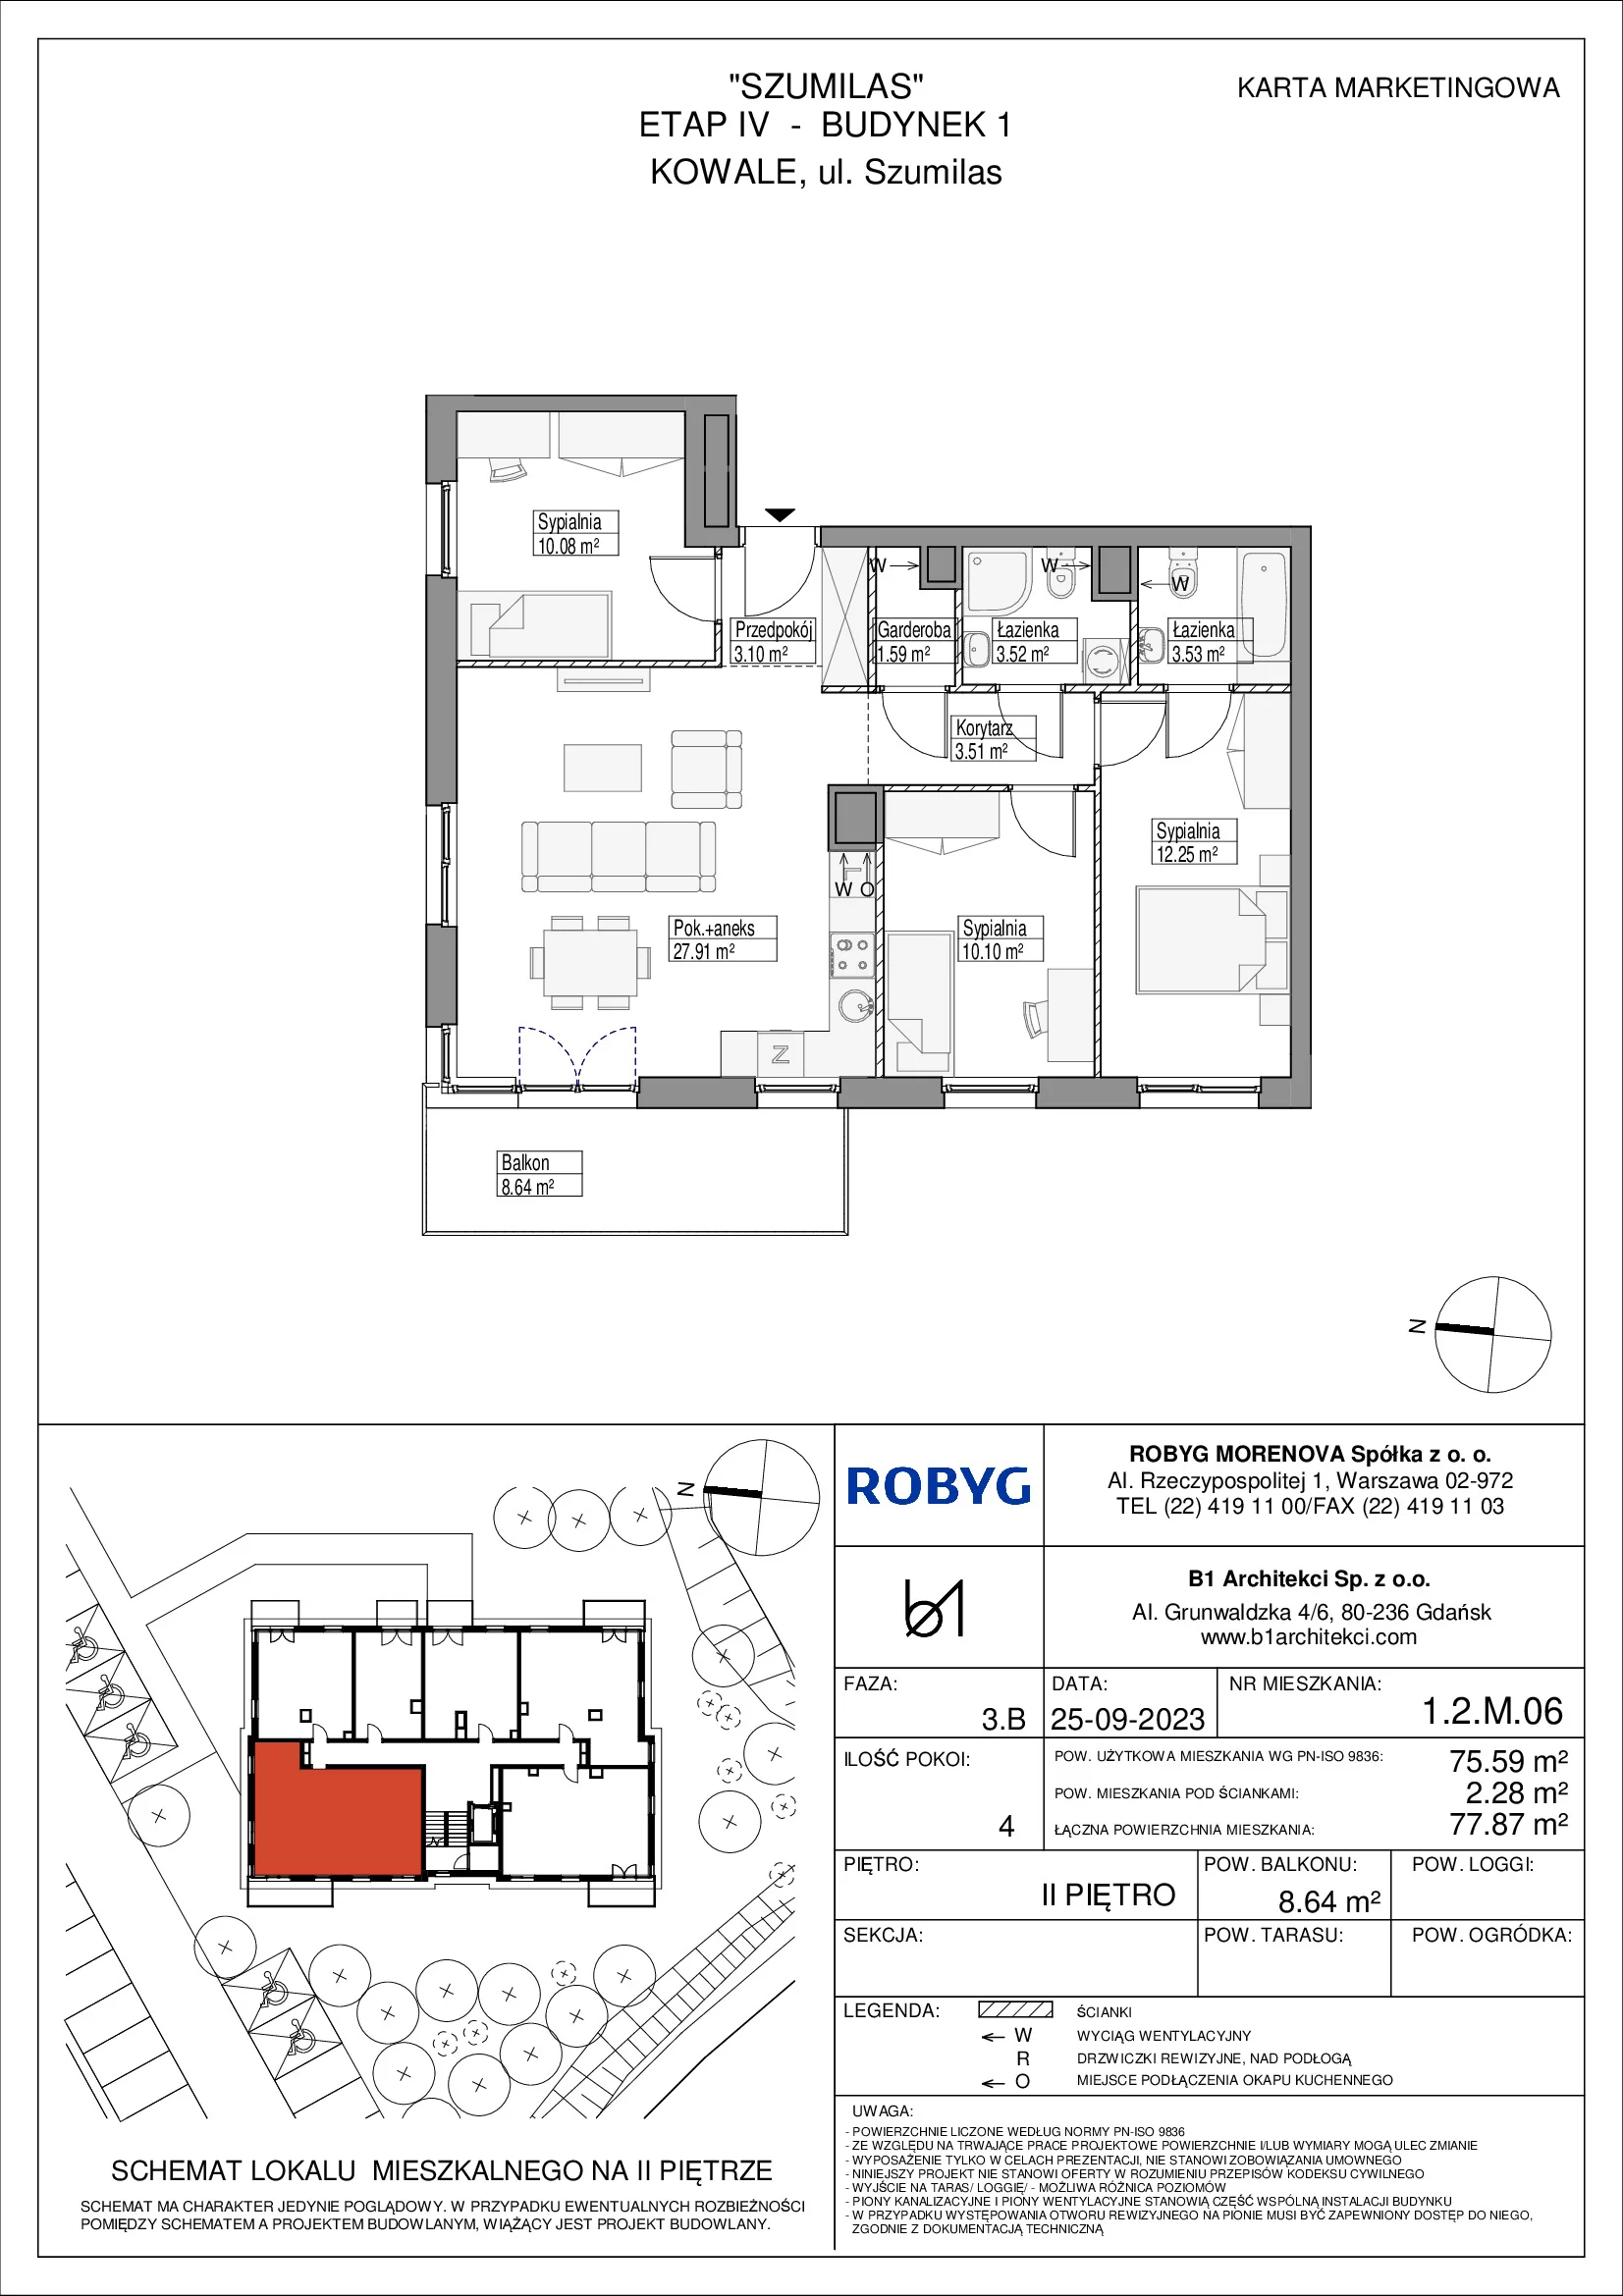 Mieszkanie 75,59 m², piętro 2, oferta nr 1.2M06, Szumilas, Kowale, ul. Magazynowa